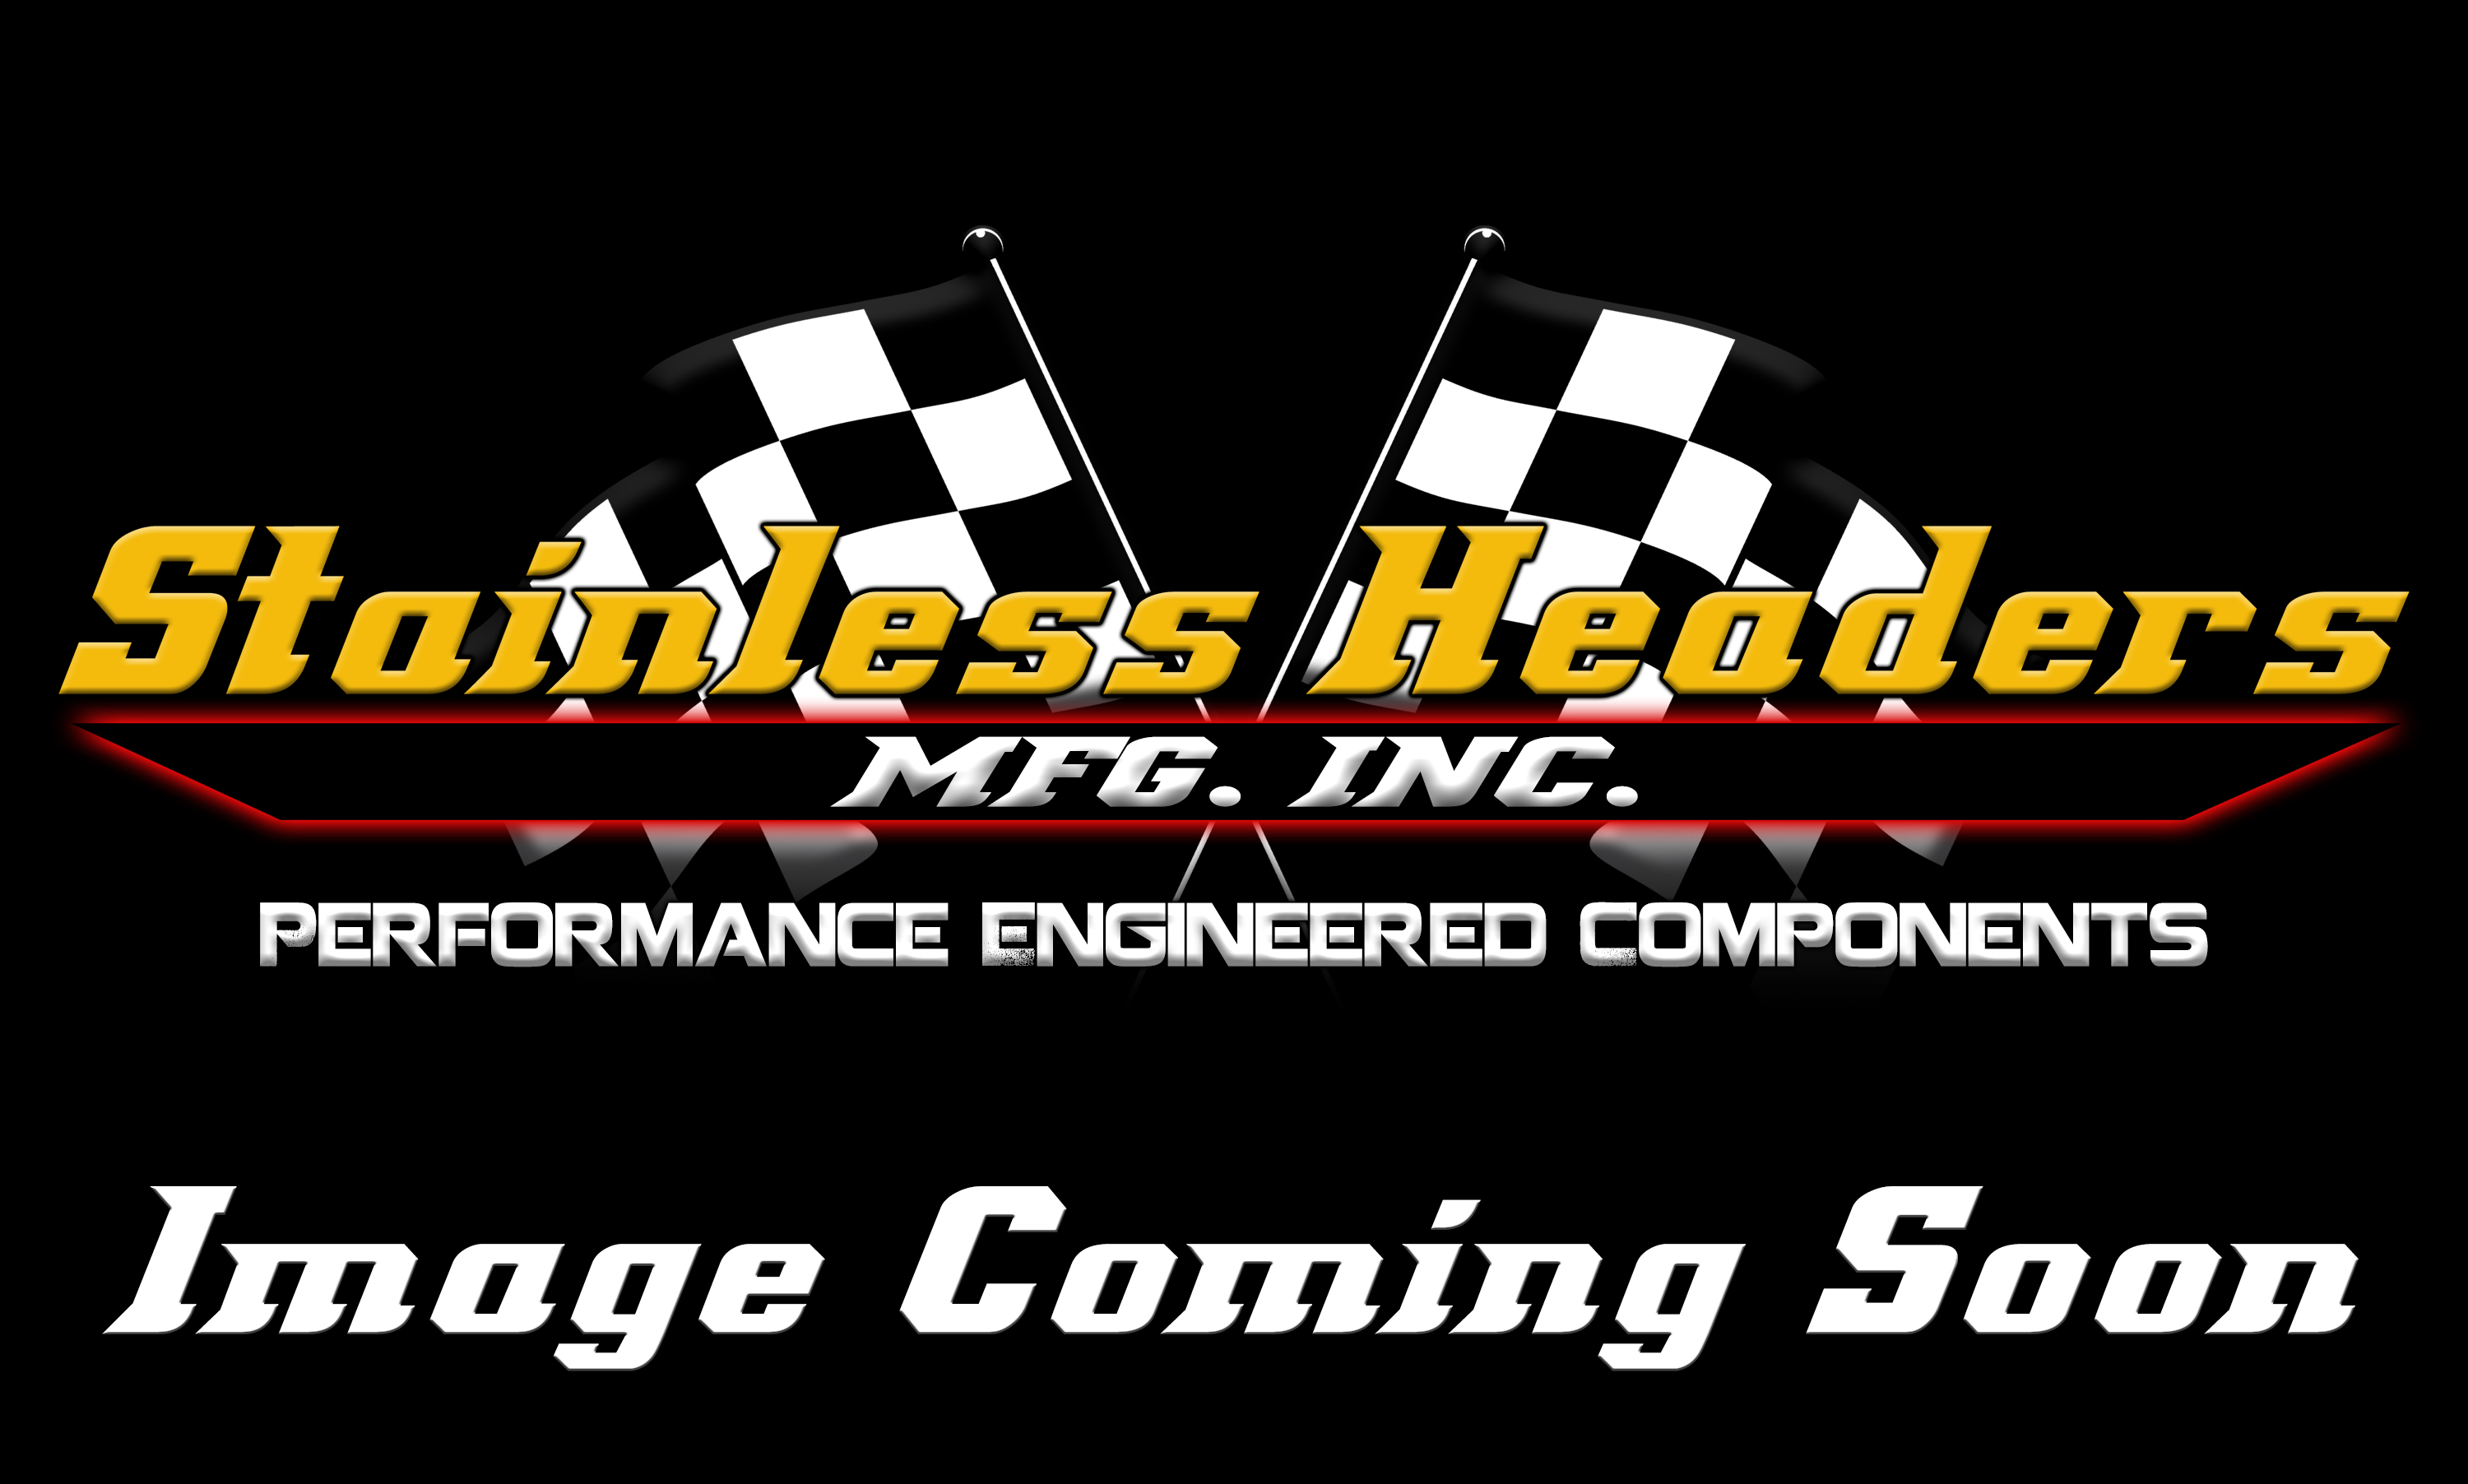 Stainless Headers - Chevrolet LS7/LSX Custom Turbo Header Build Kit - Image 2